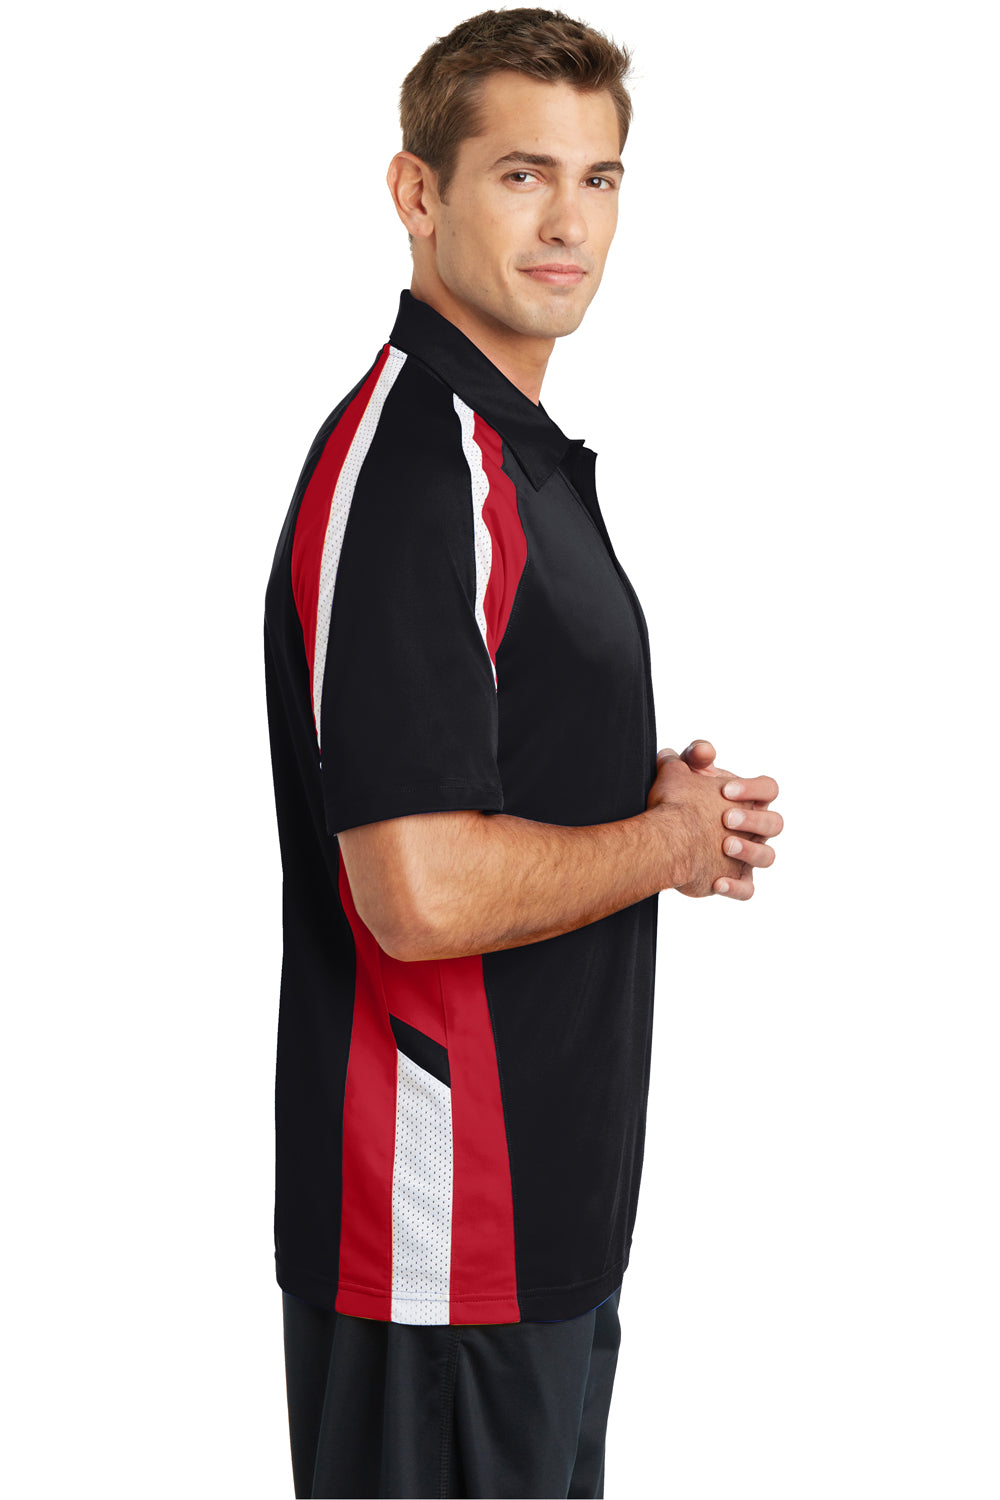 Sport-Tek ST654 Mens Sport-Wick Moisture Wicking Short Sleeve Polo Shirt Black/Red/White Side